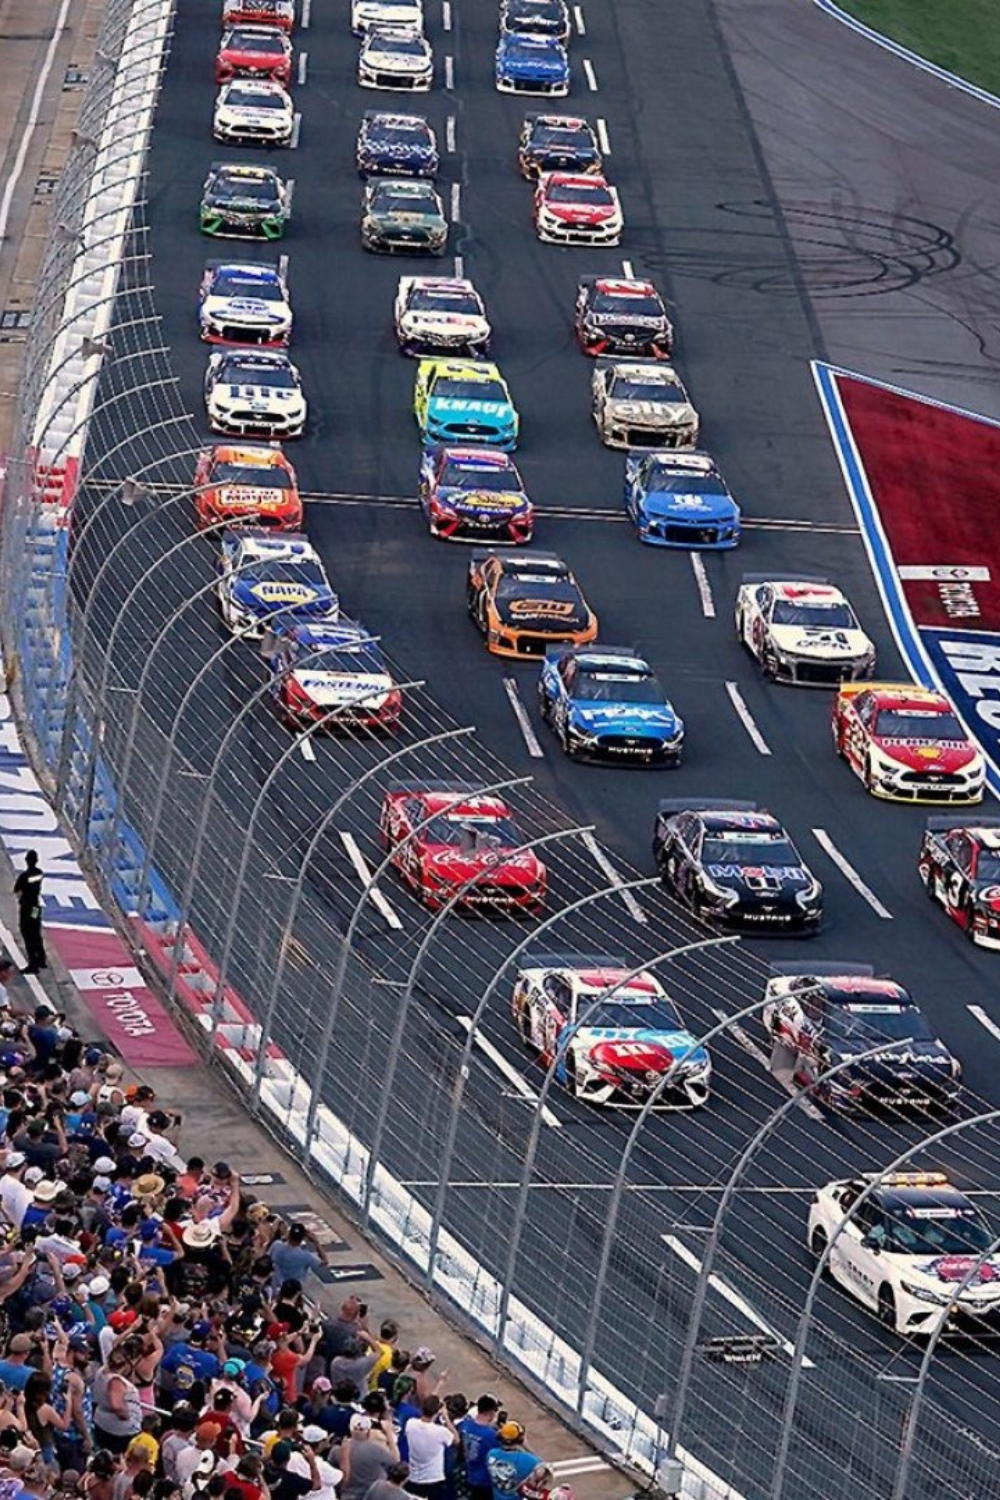 NASCAR Racing Event